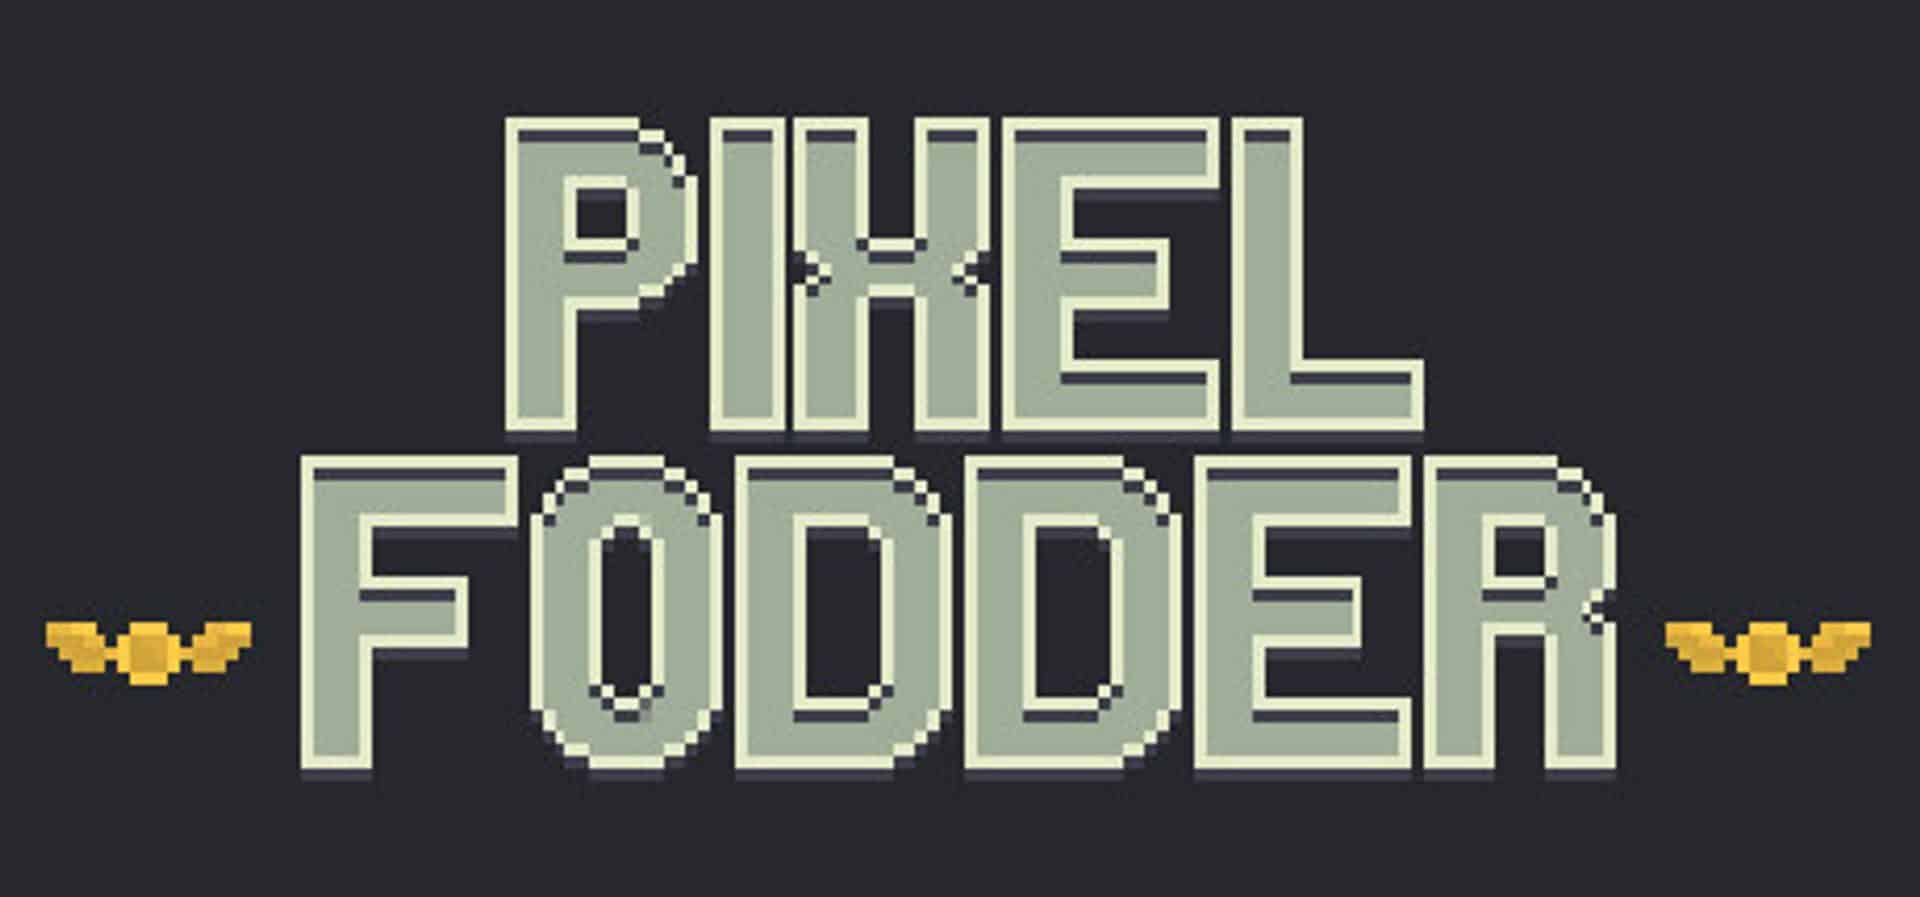 Pixel Fodder